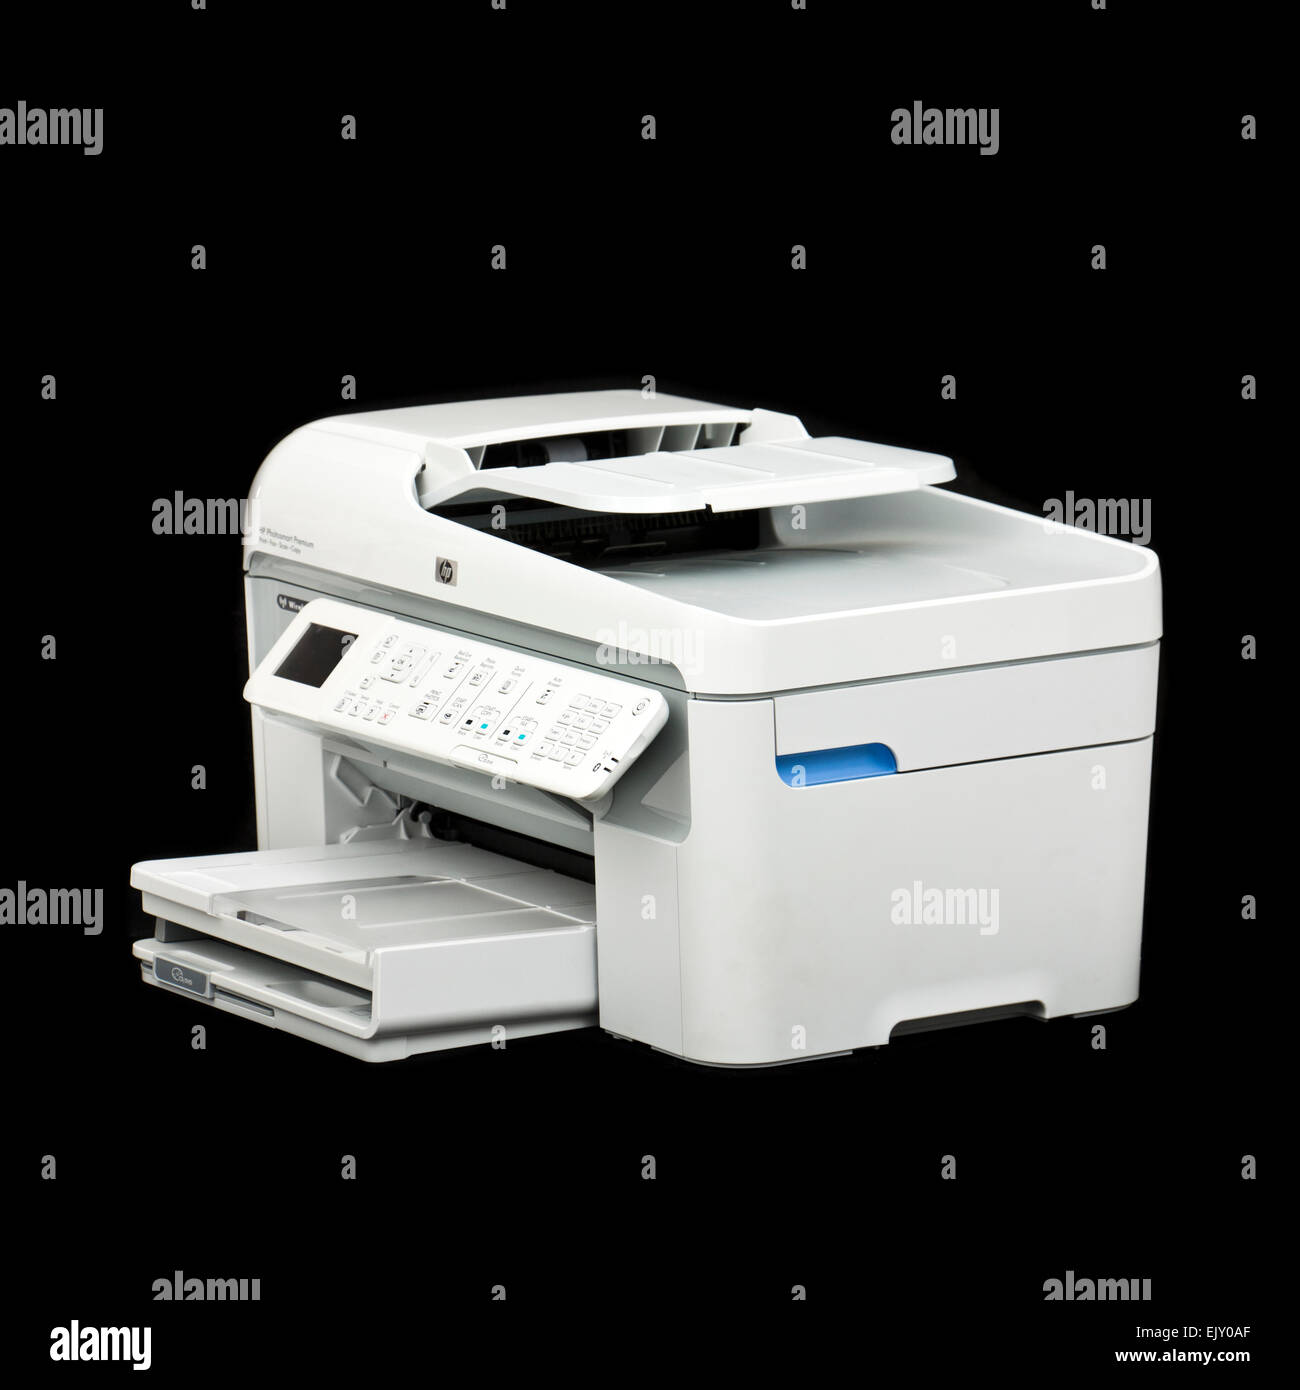 Hp printer -Fotos und -Bildmaterial in hoher Auflösung – Alamy